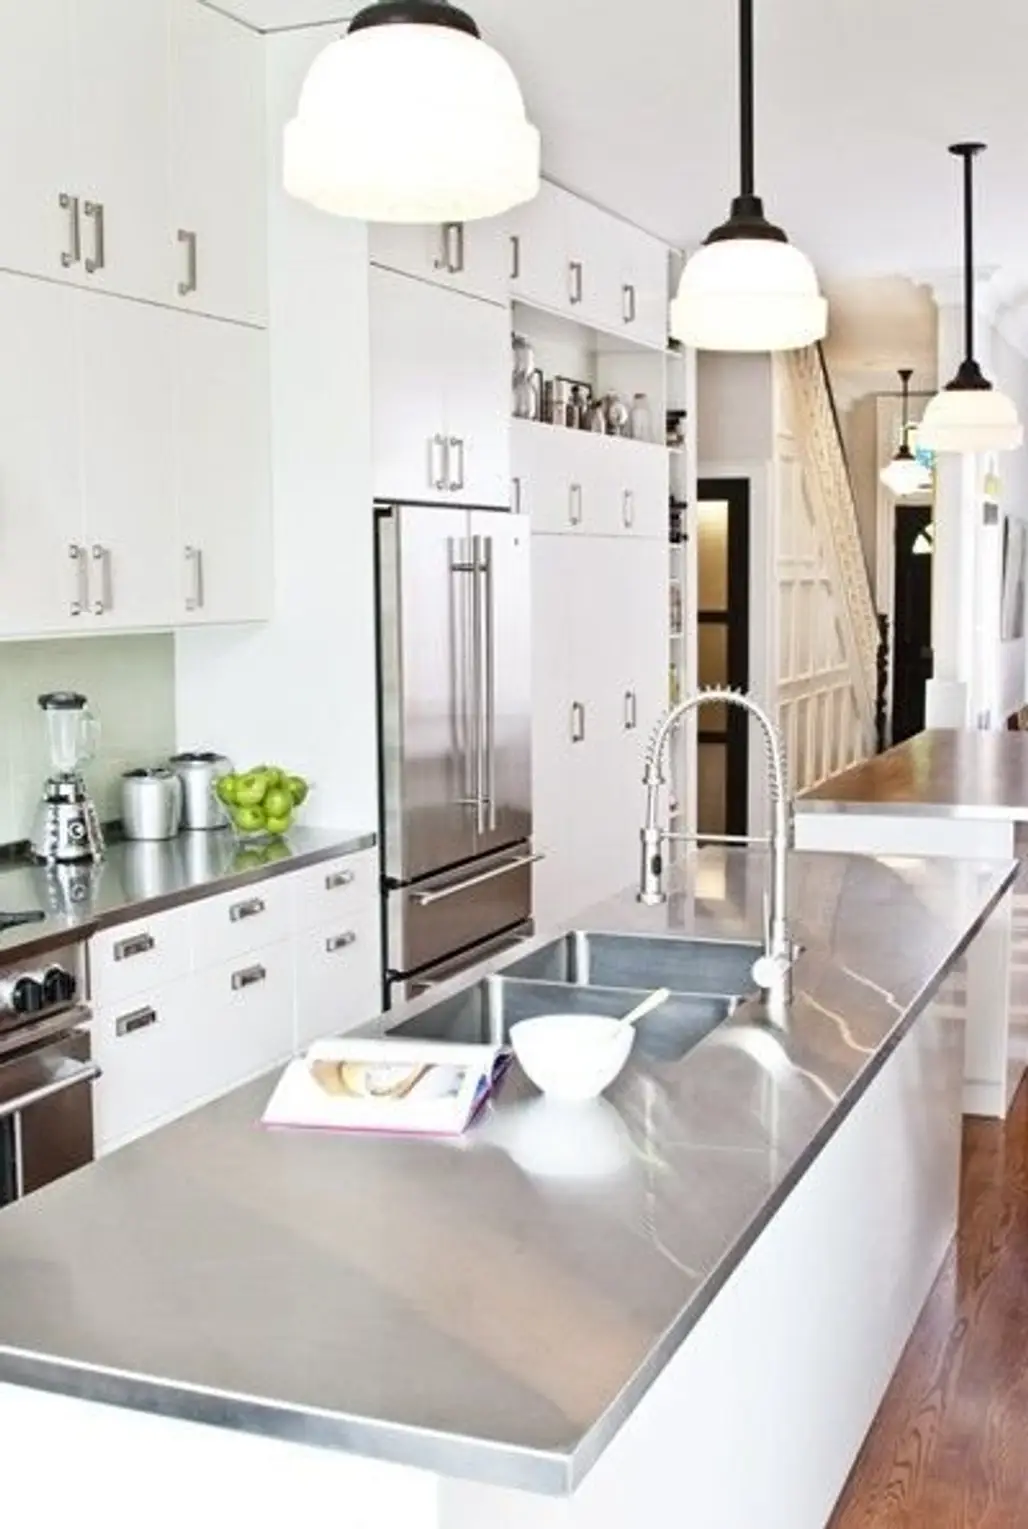 countertop, kitchen, interior design, cuisine classique, product design,